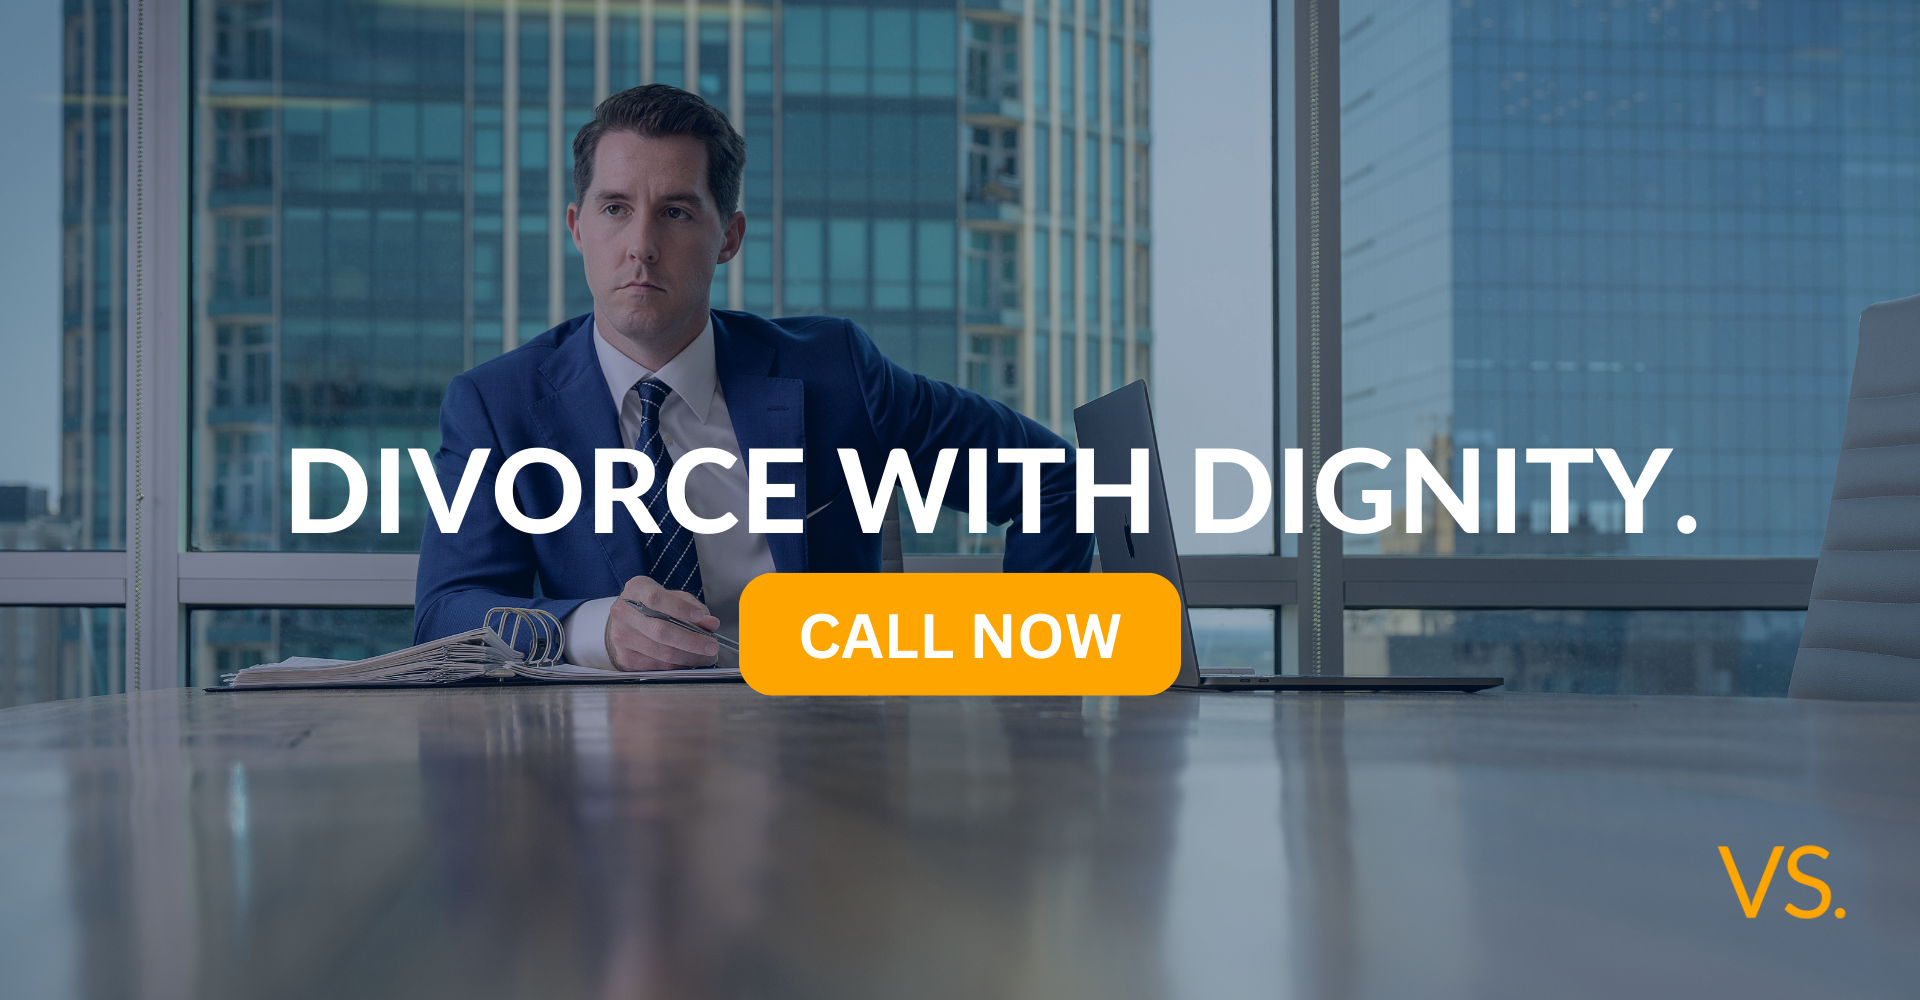 Nuestros mejores abogados de divorcio le ayudan a divorciarse con dignidad.